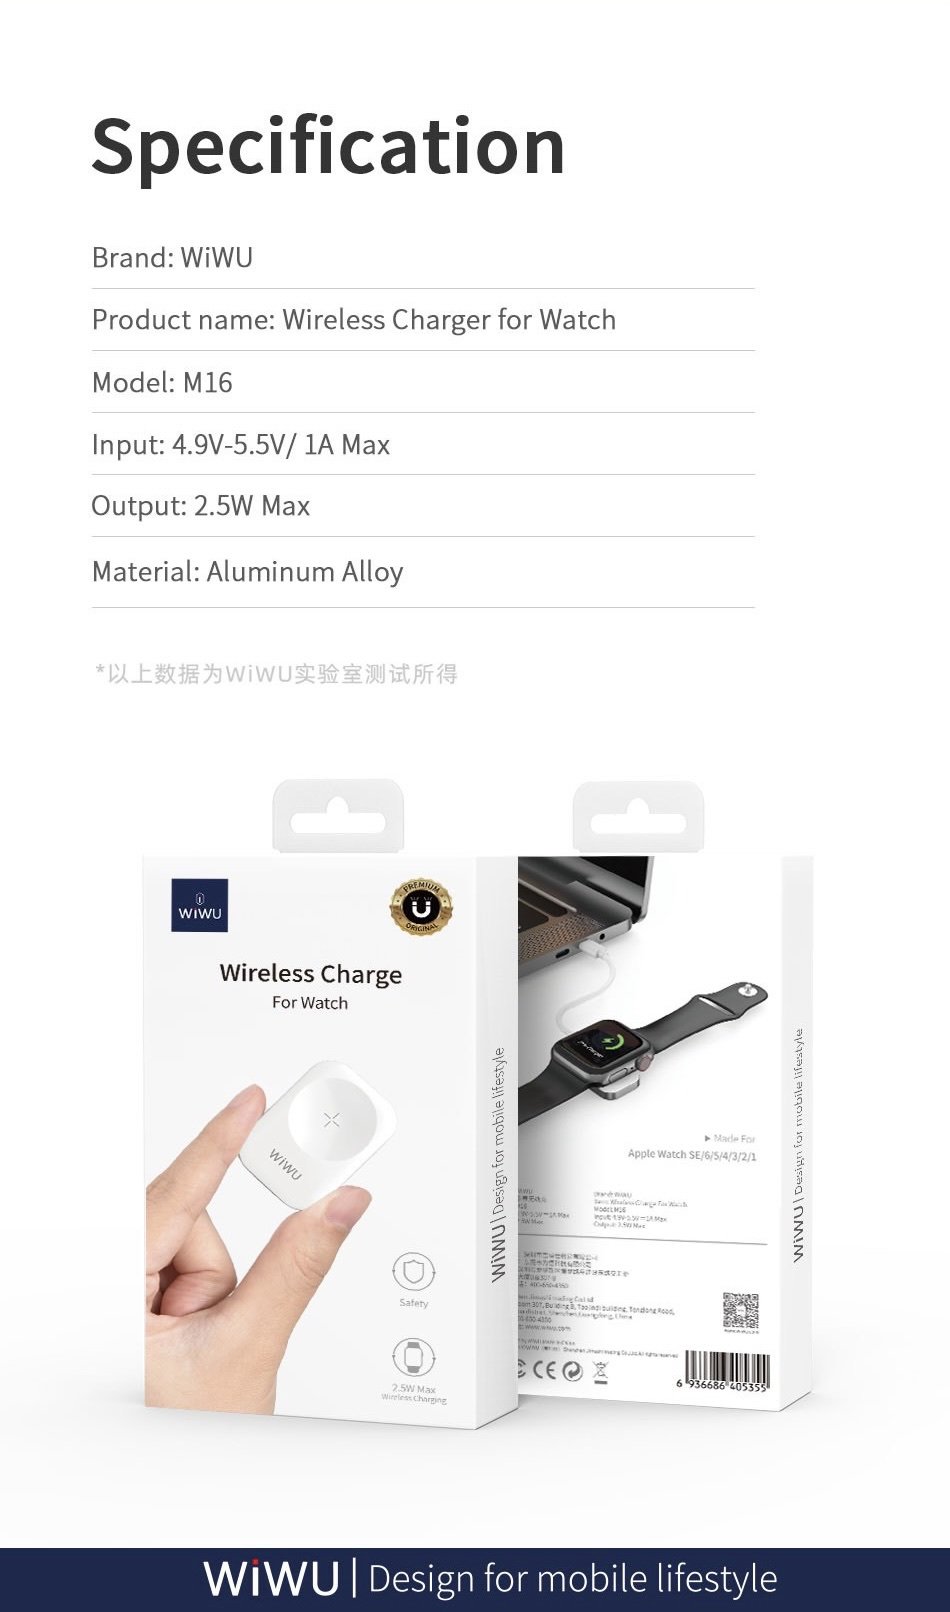 Sạc Không Dây Wiwu Wiwu Wireless Charge M16 Dành Cho Đồng Hồ Thông Minh Sạc Nhanh, Hấp Phụ Từ Tính Mạnh - Hàng Chính Hãng